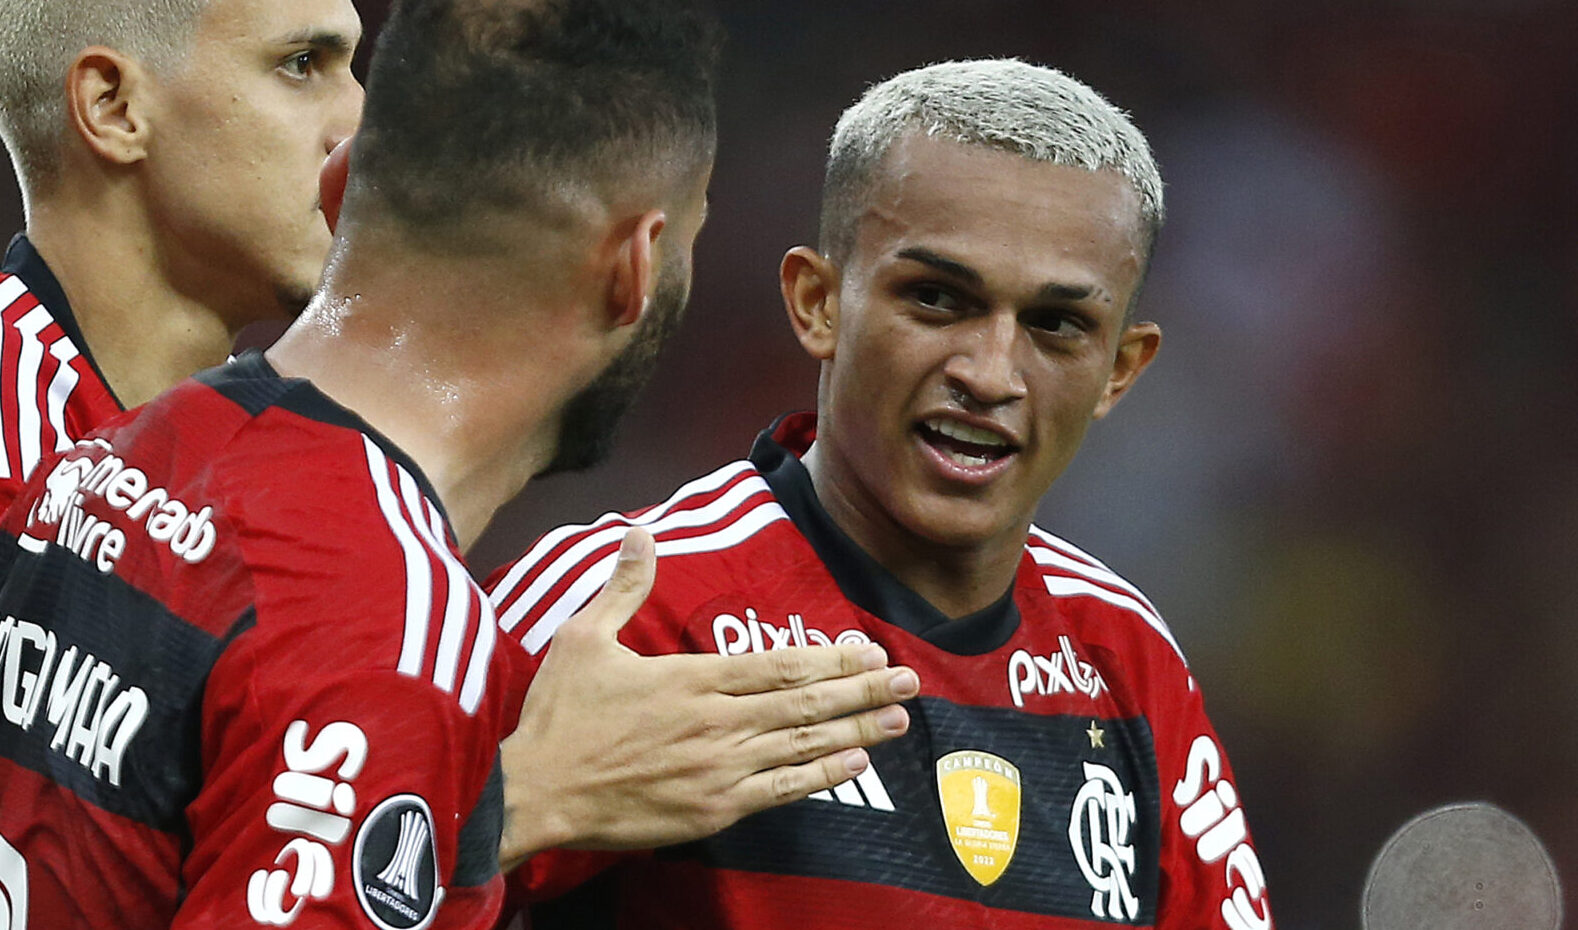 Wesley leva o terceiro amarelo e desfalca o Flamengo no jogo da volta  contra o Grêmio